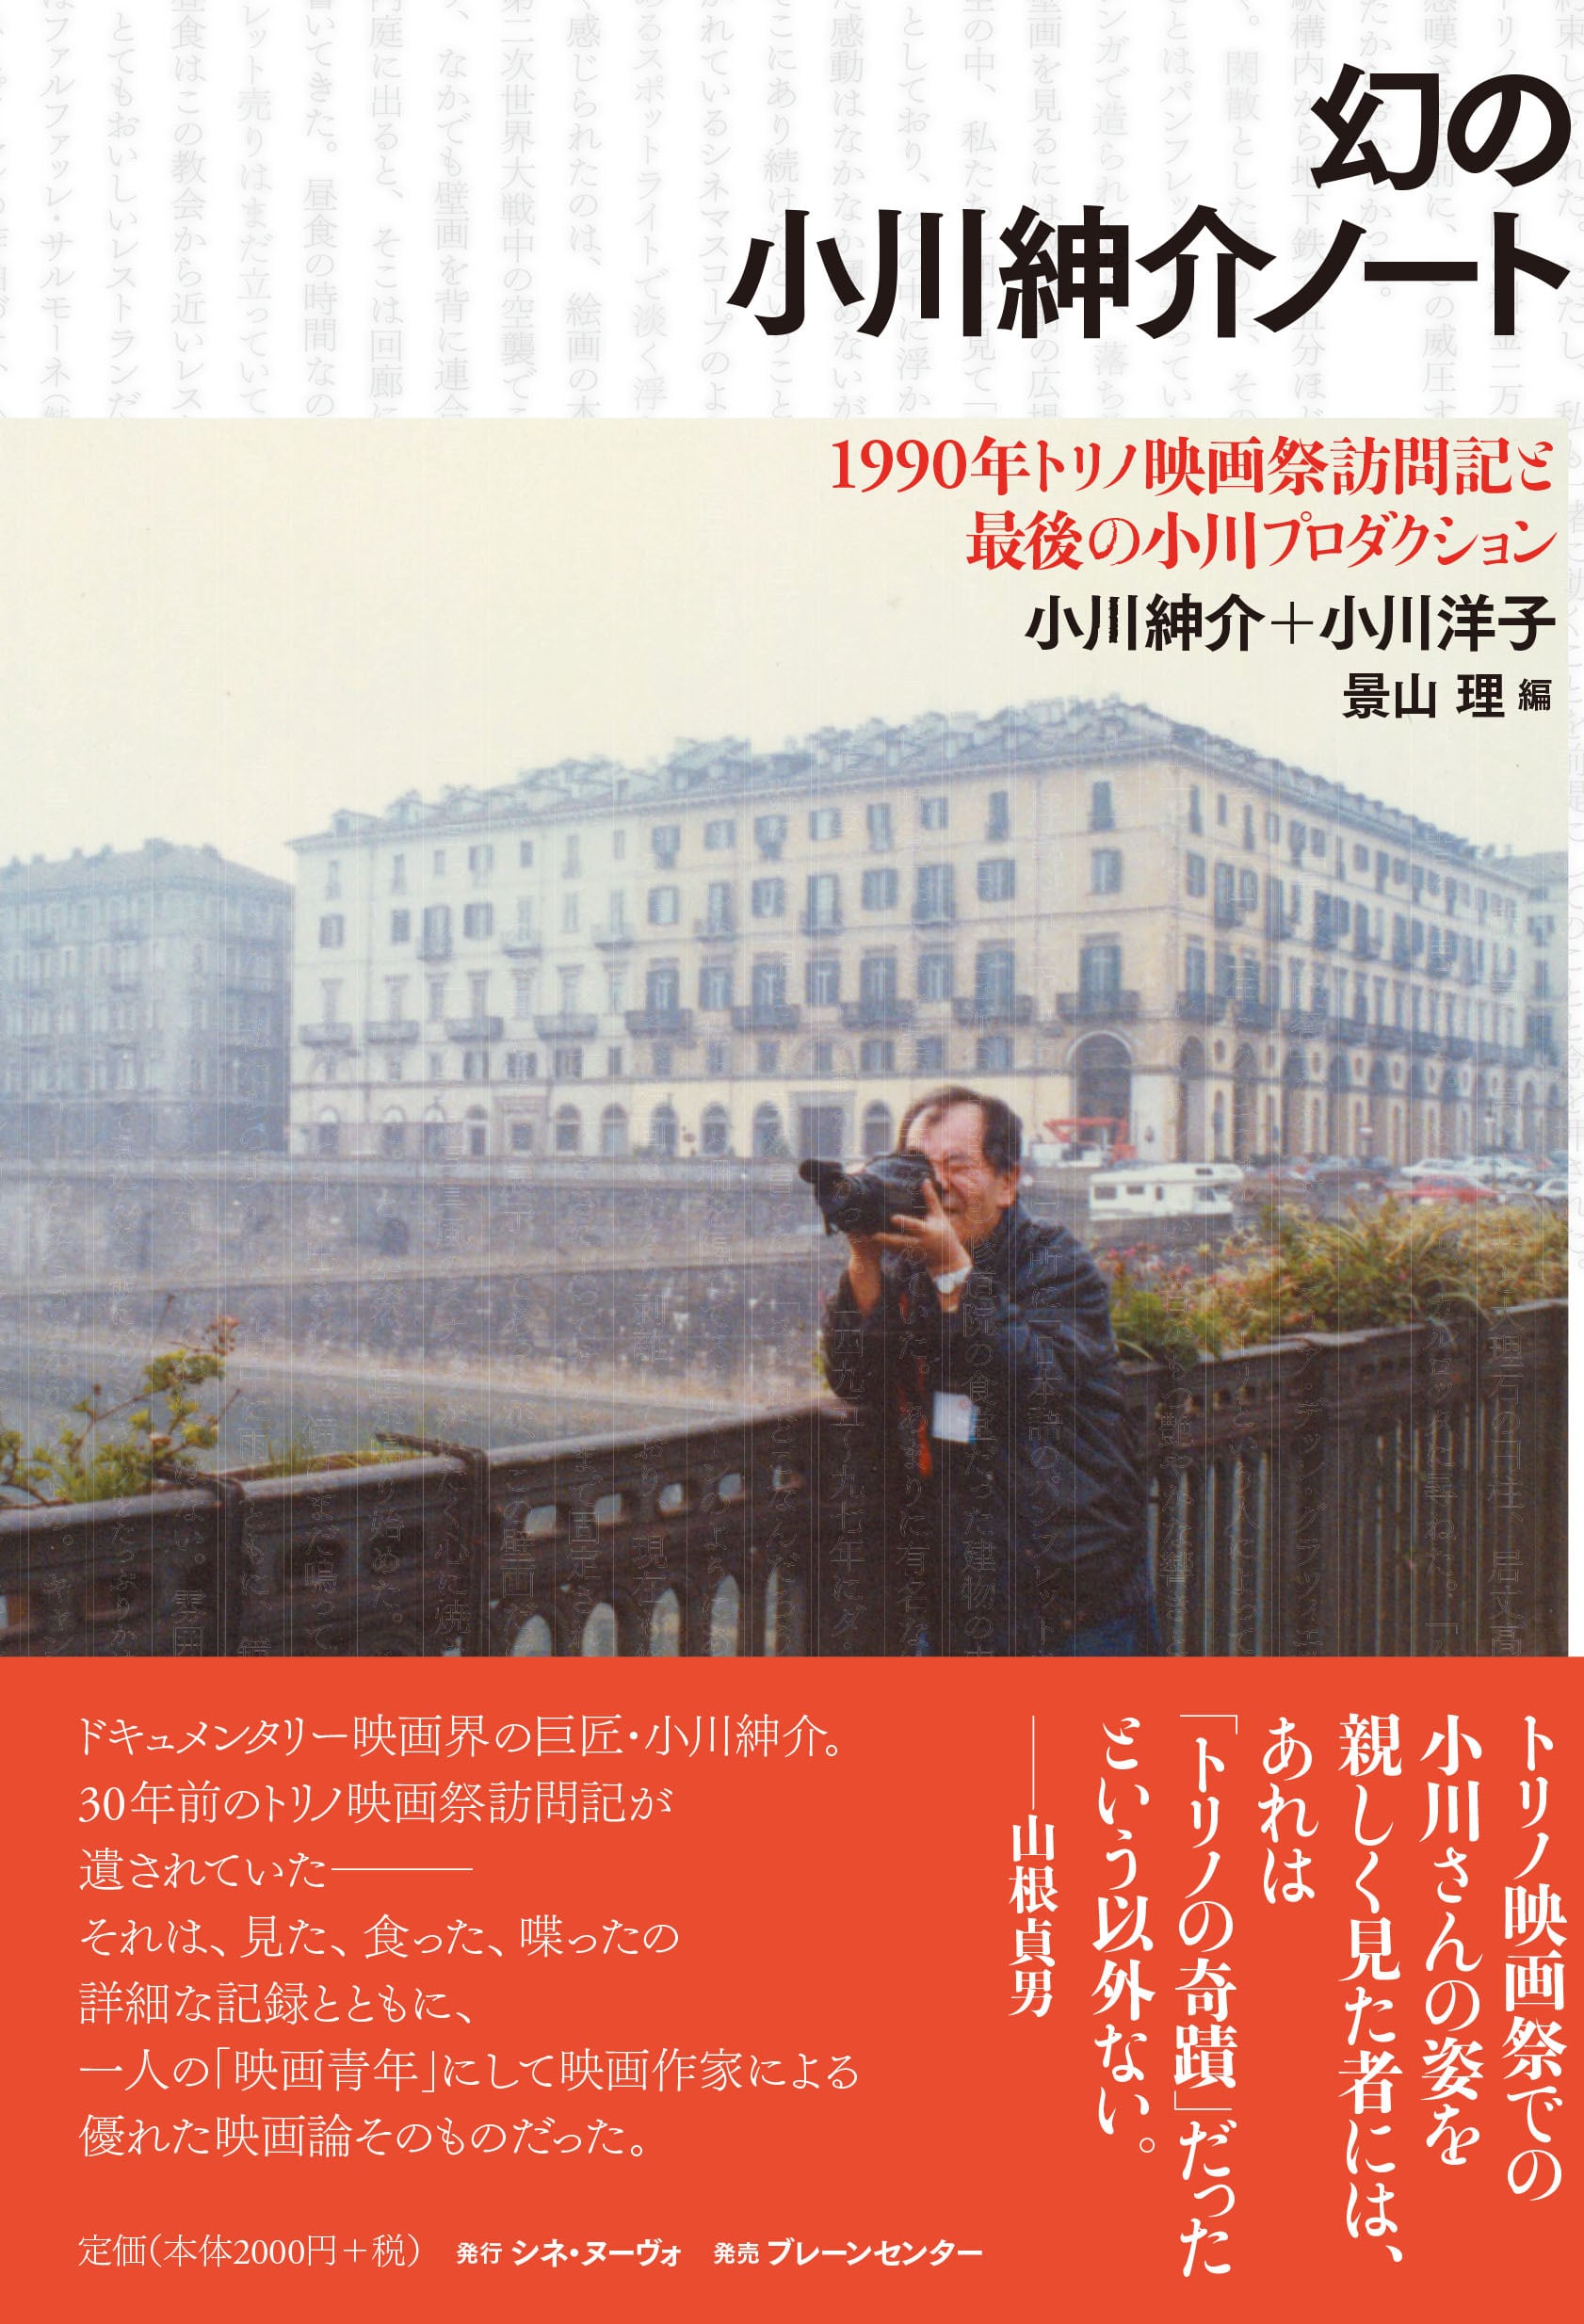 shop　cinenouveau　online　幻の小川紳介ノート　〜1990年トリノ映画祭訪問記と最後の小川プロダクション』